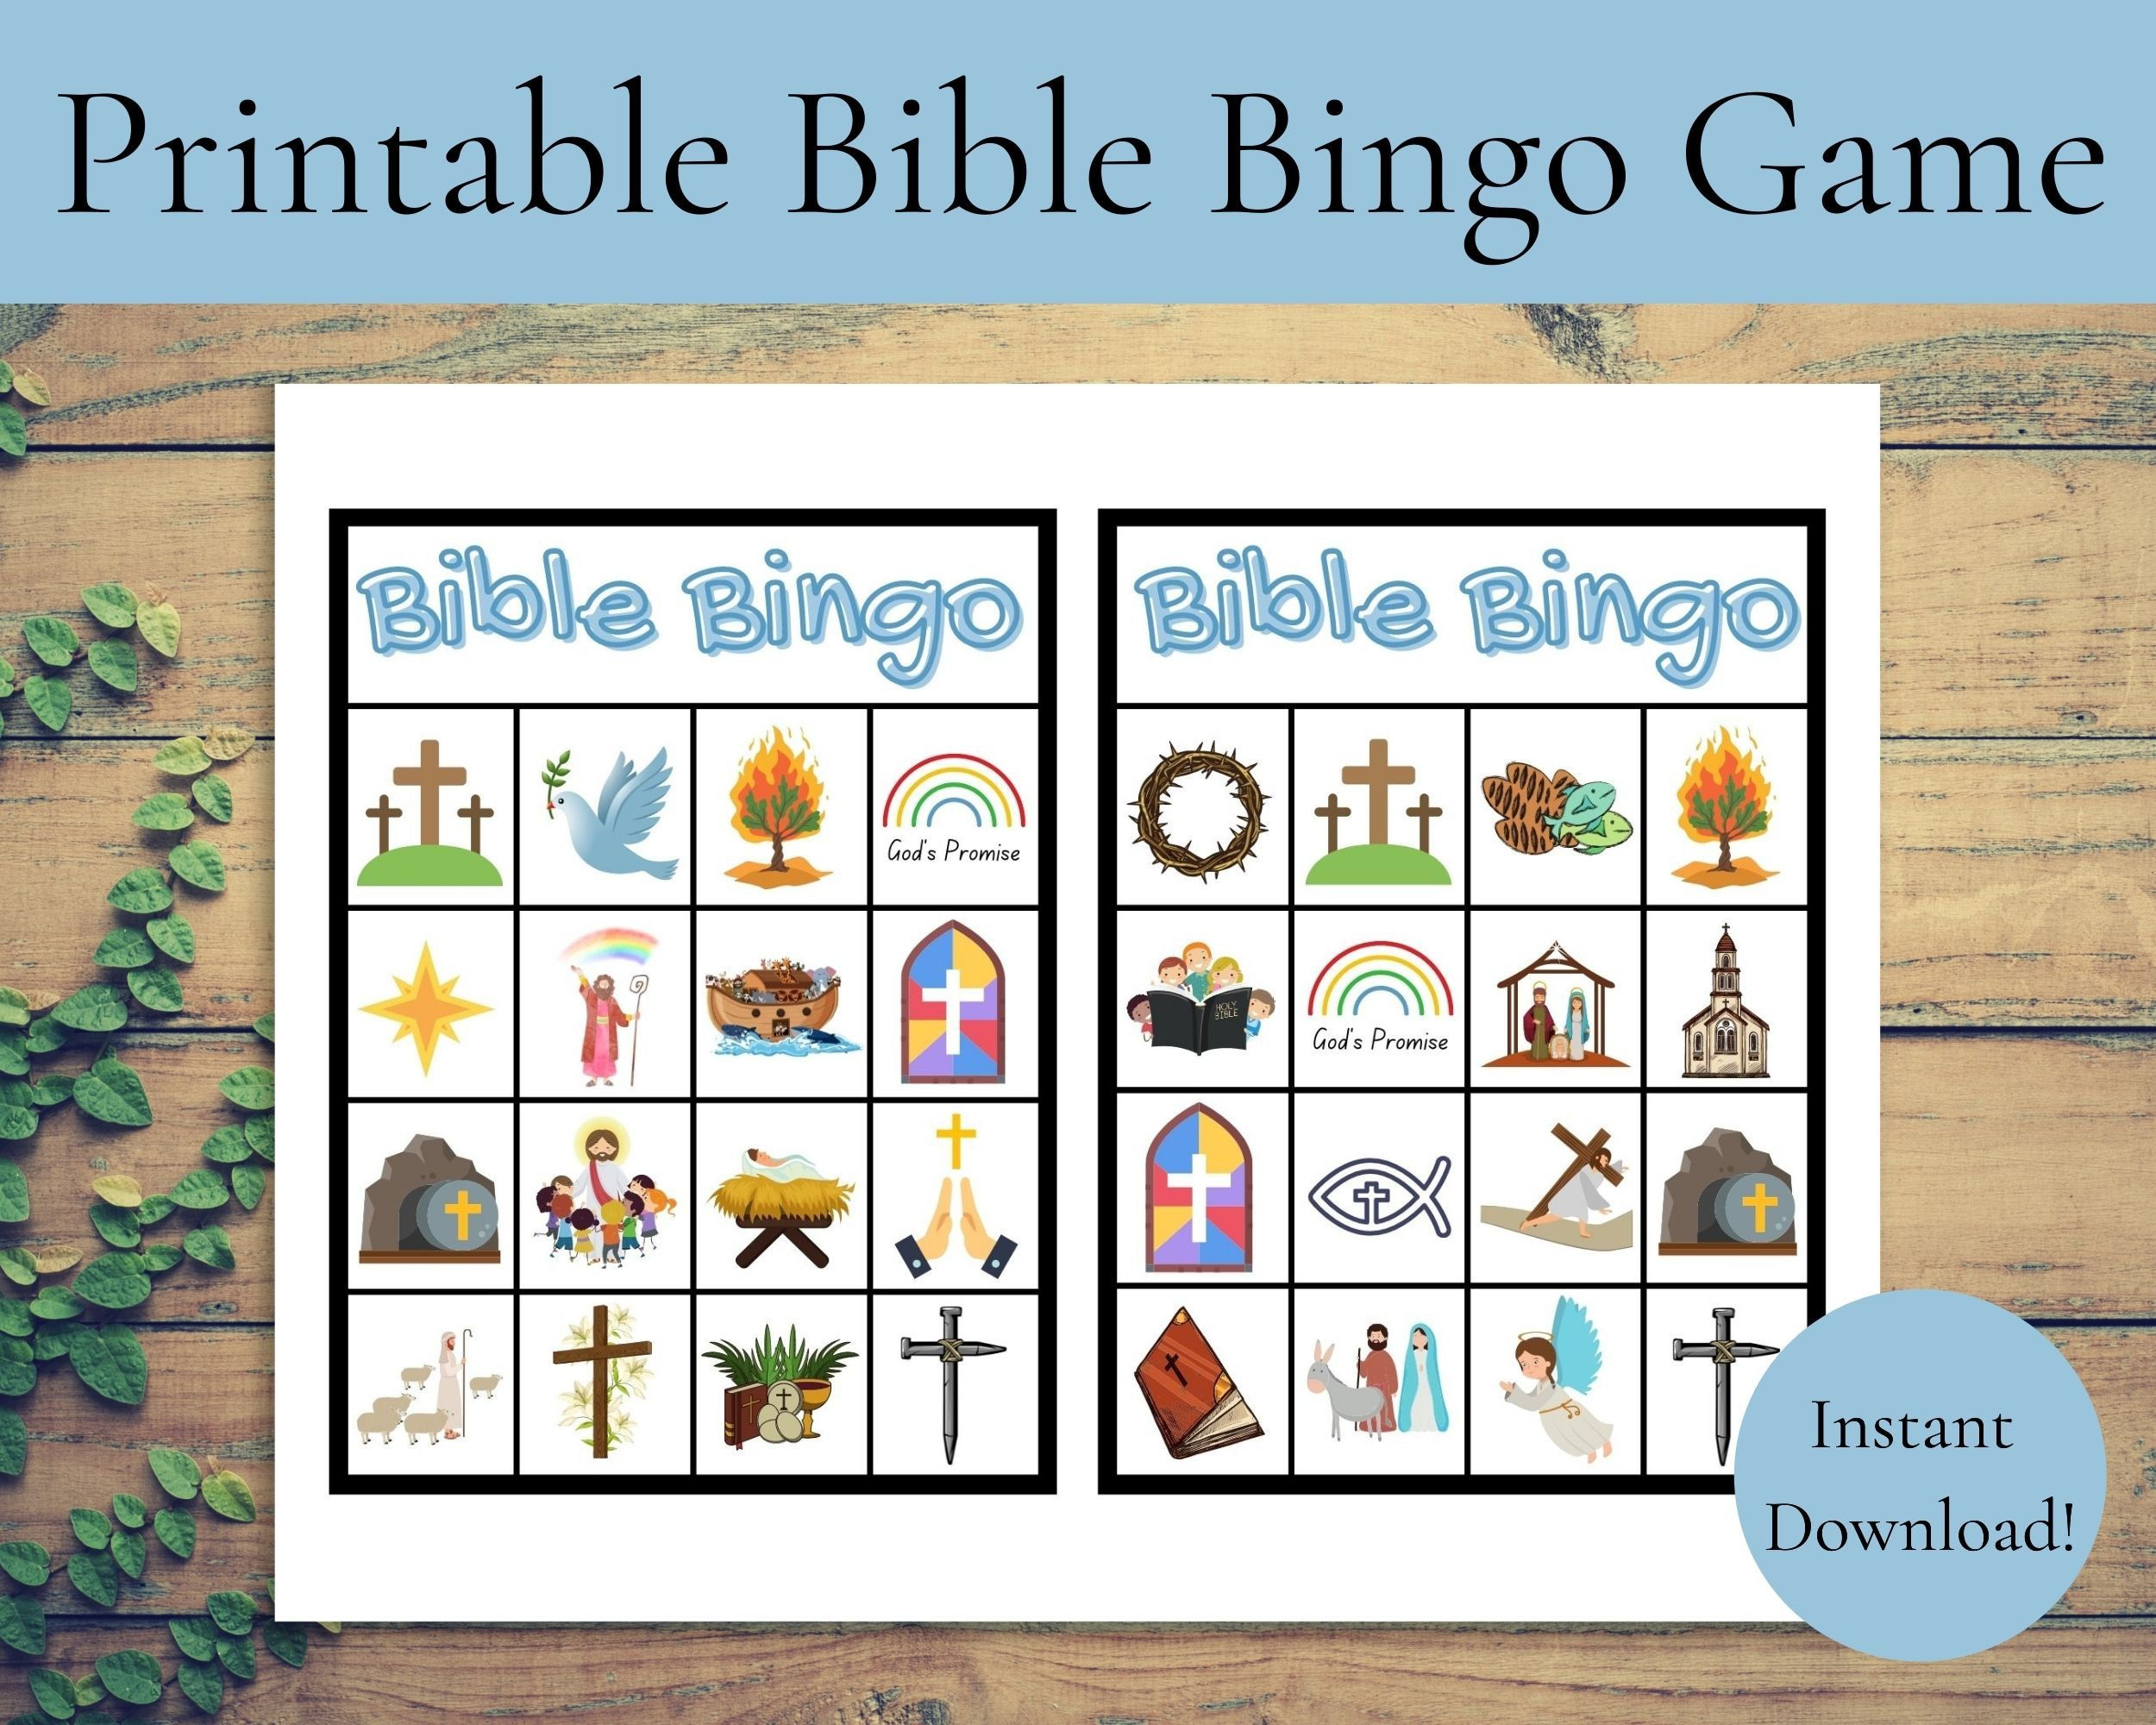 Printable Bible Bingo Game Instant Download Bible Bingo Game with Free Printable Bible Bingo For Preschoolers